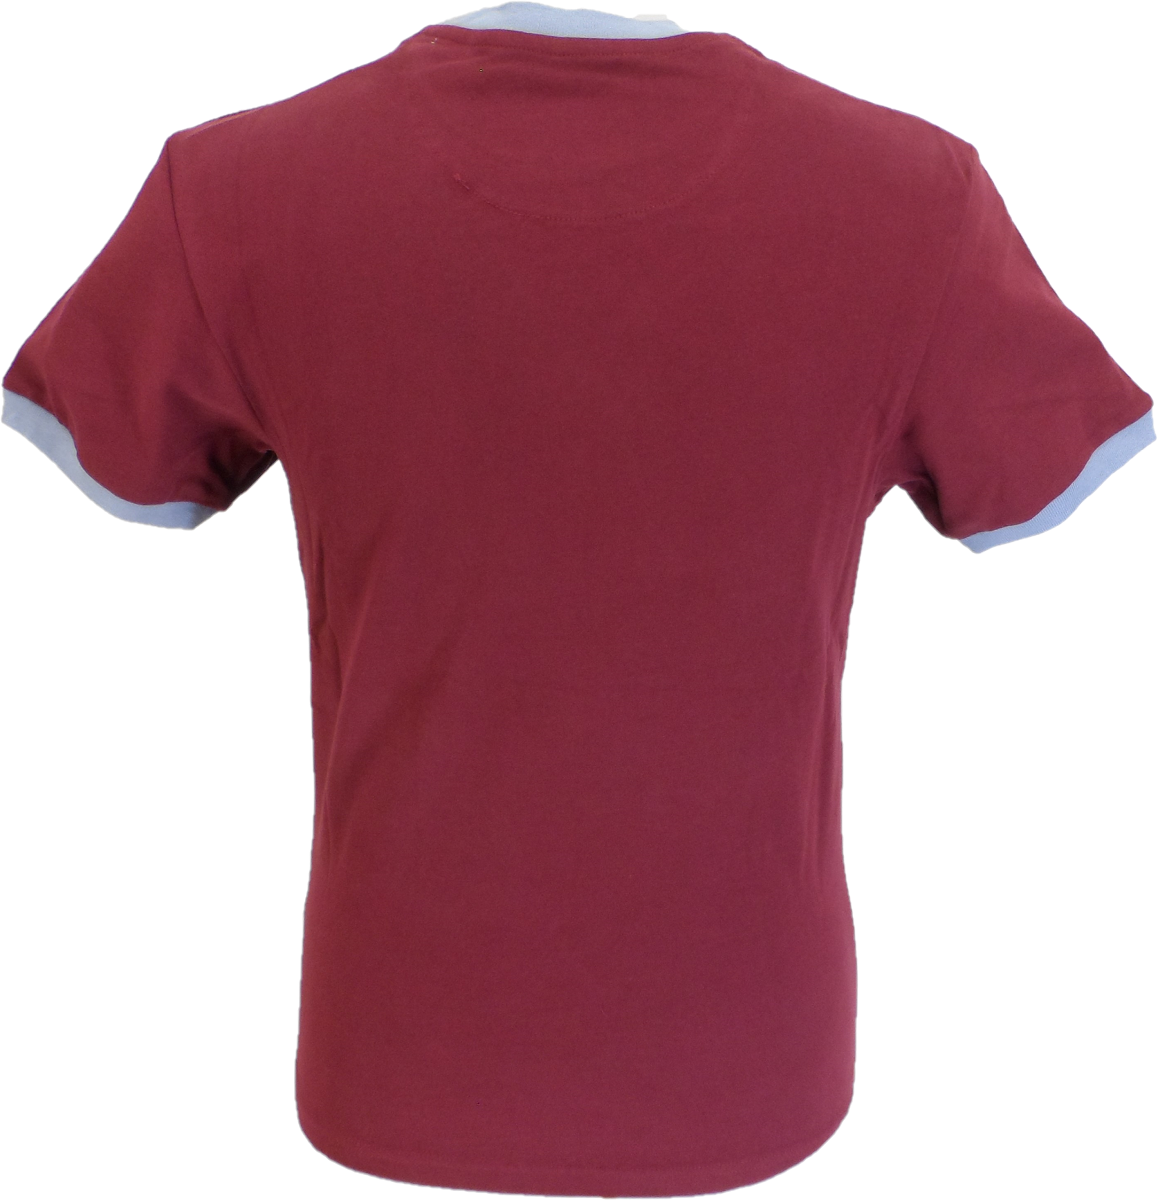 T-shirt Trojan Records Port rossa con logo classico del casco 100% cotone